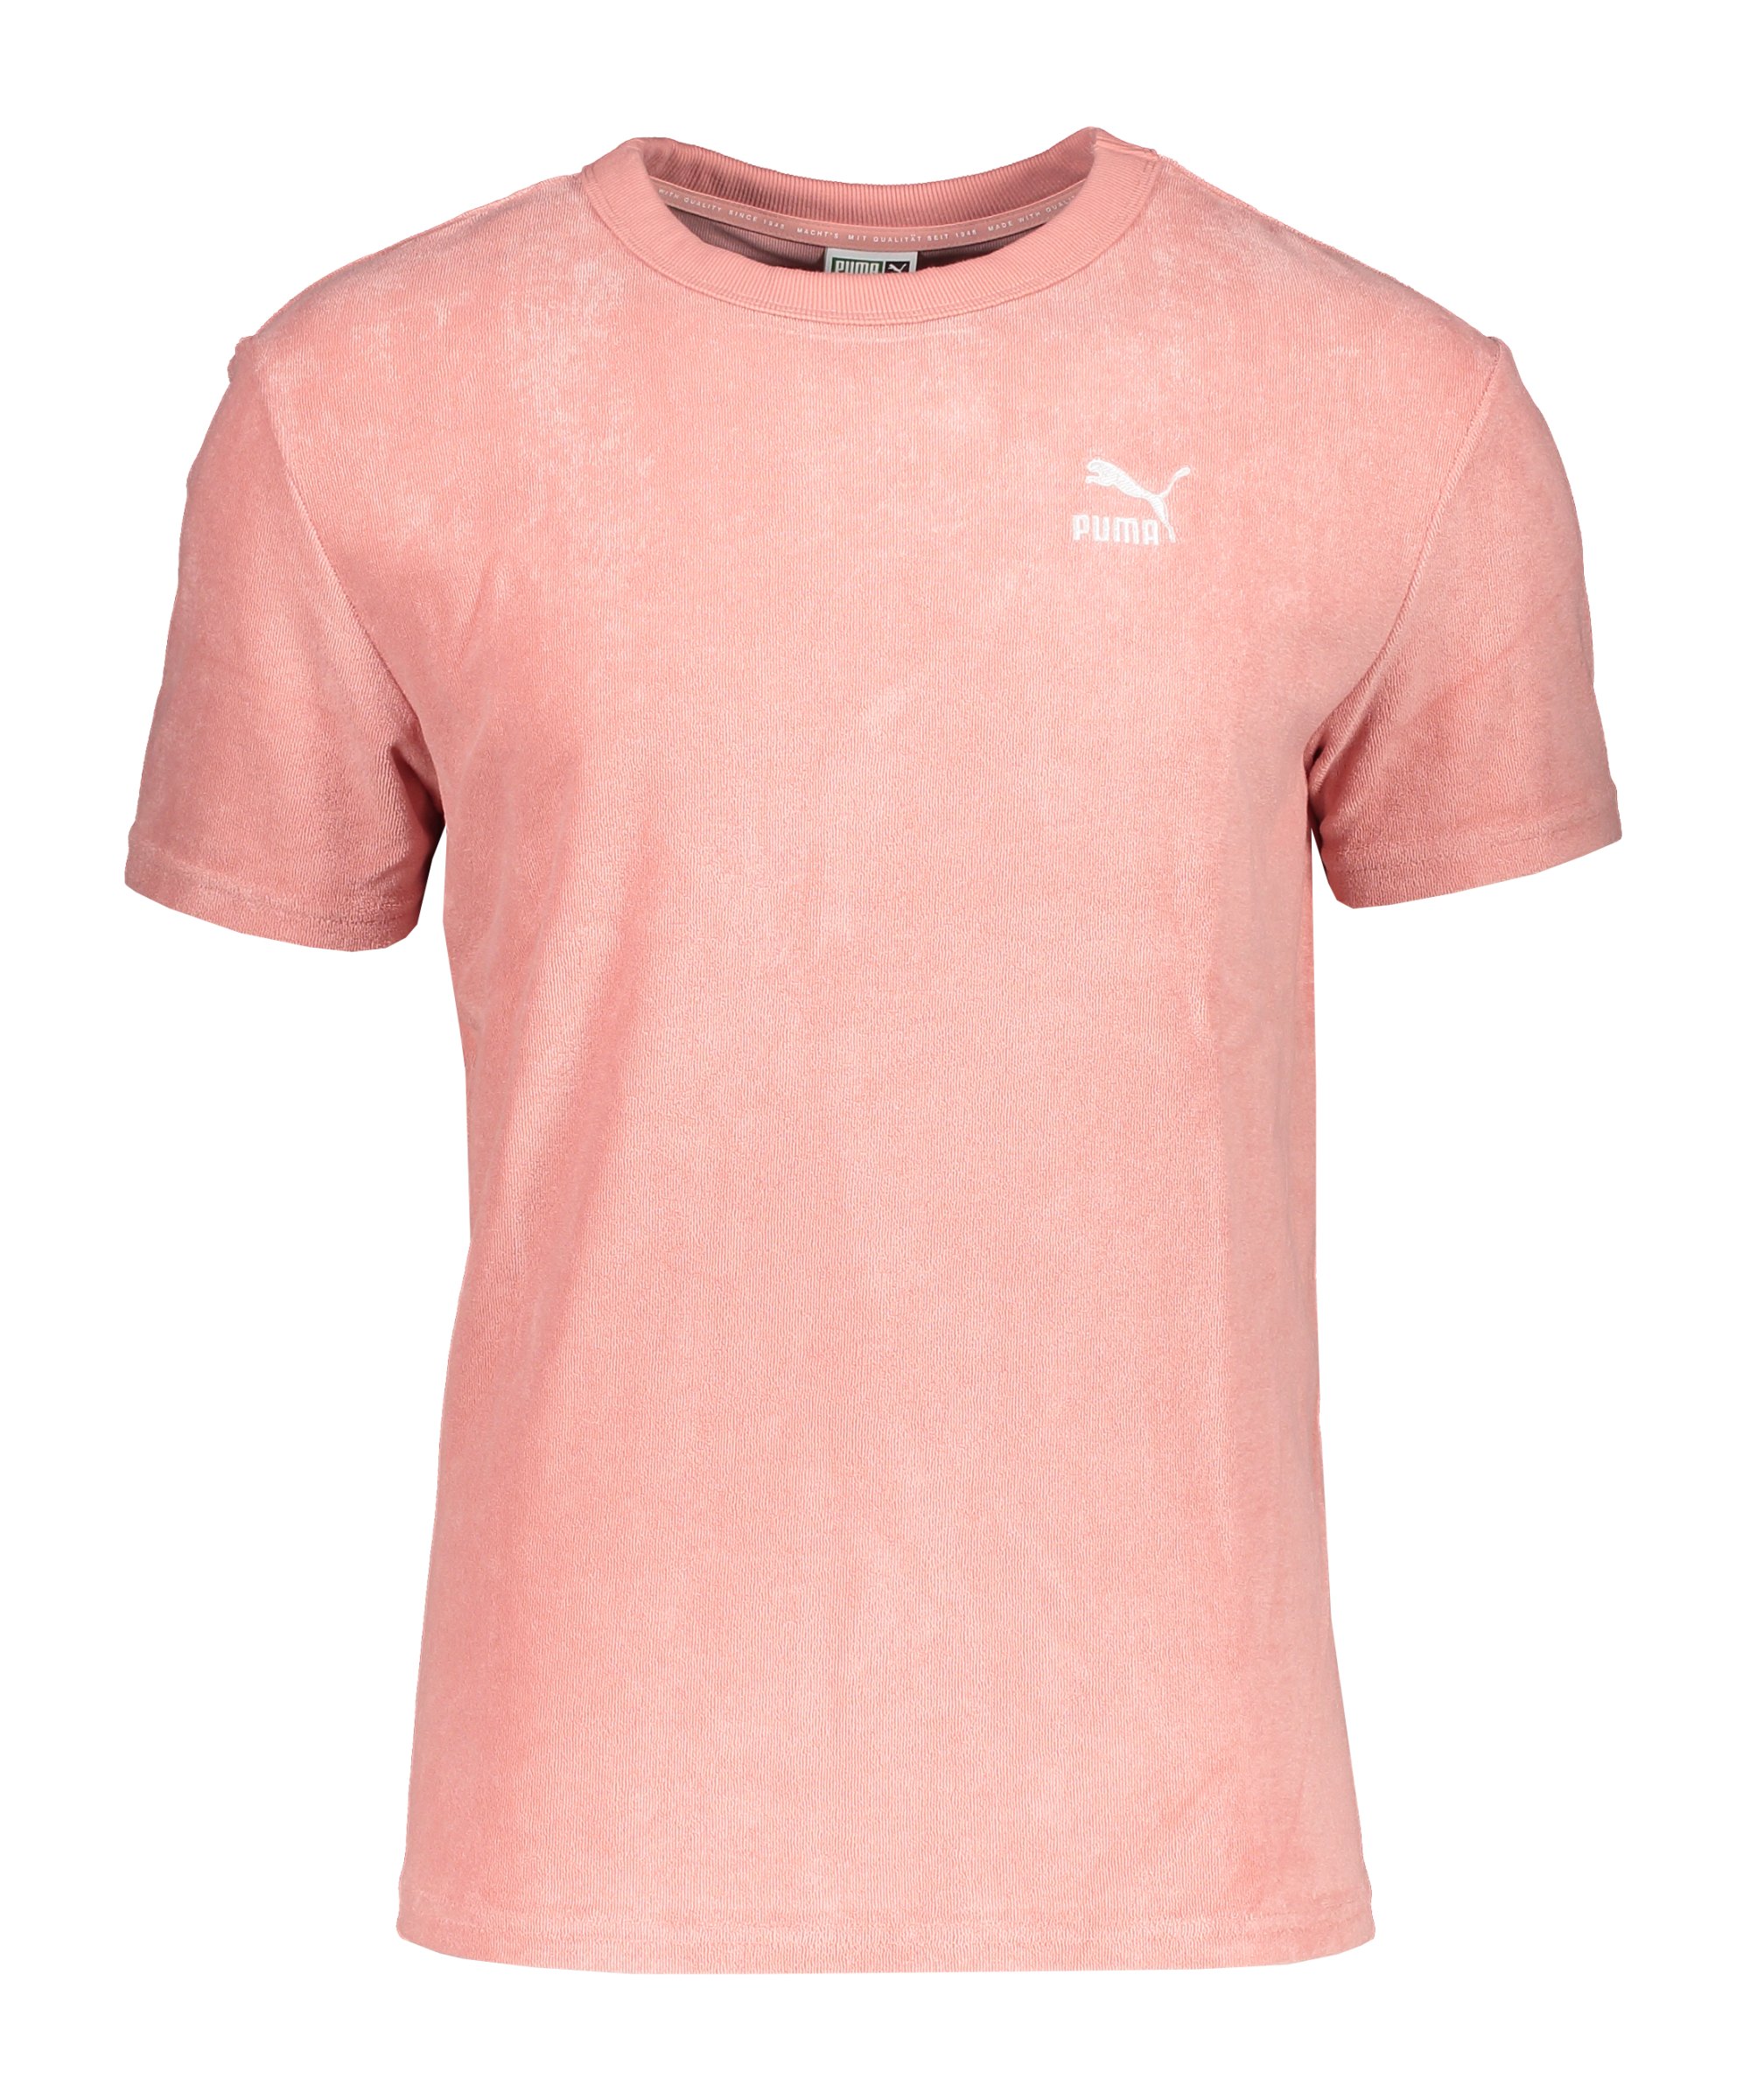 PUMA Classics Toweling T-Shirt Rosa F24 - rosa